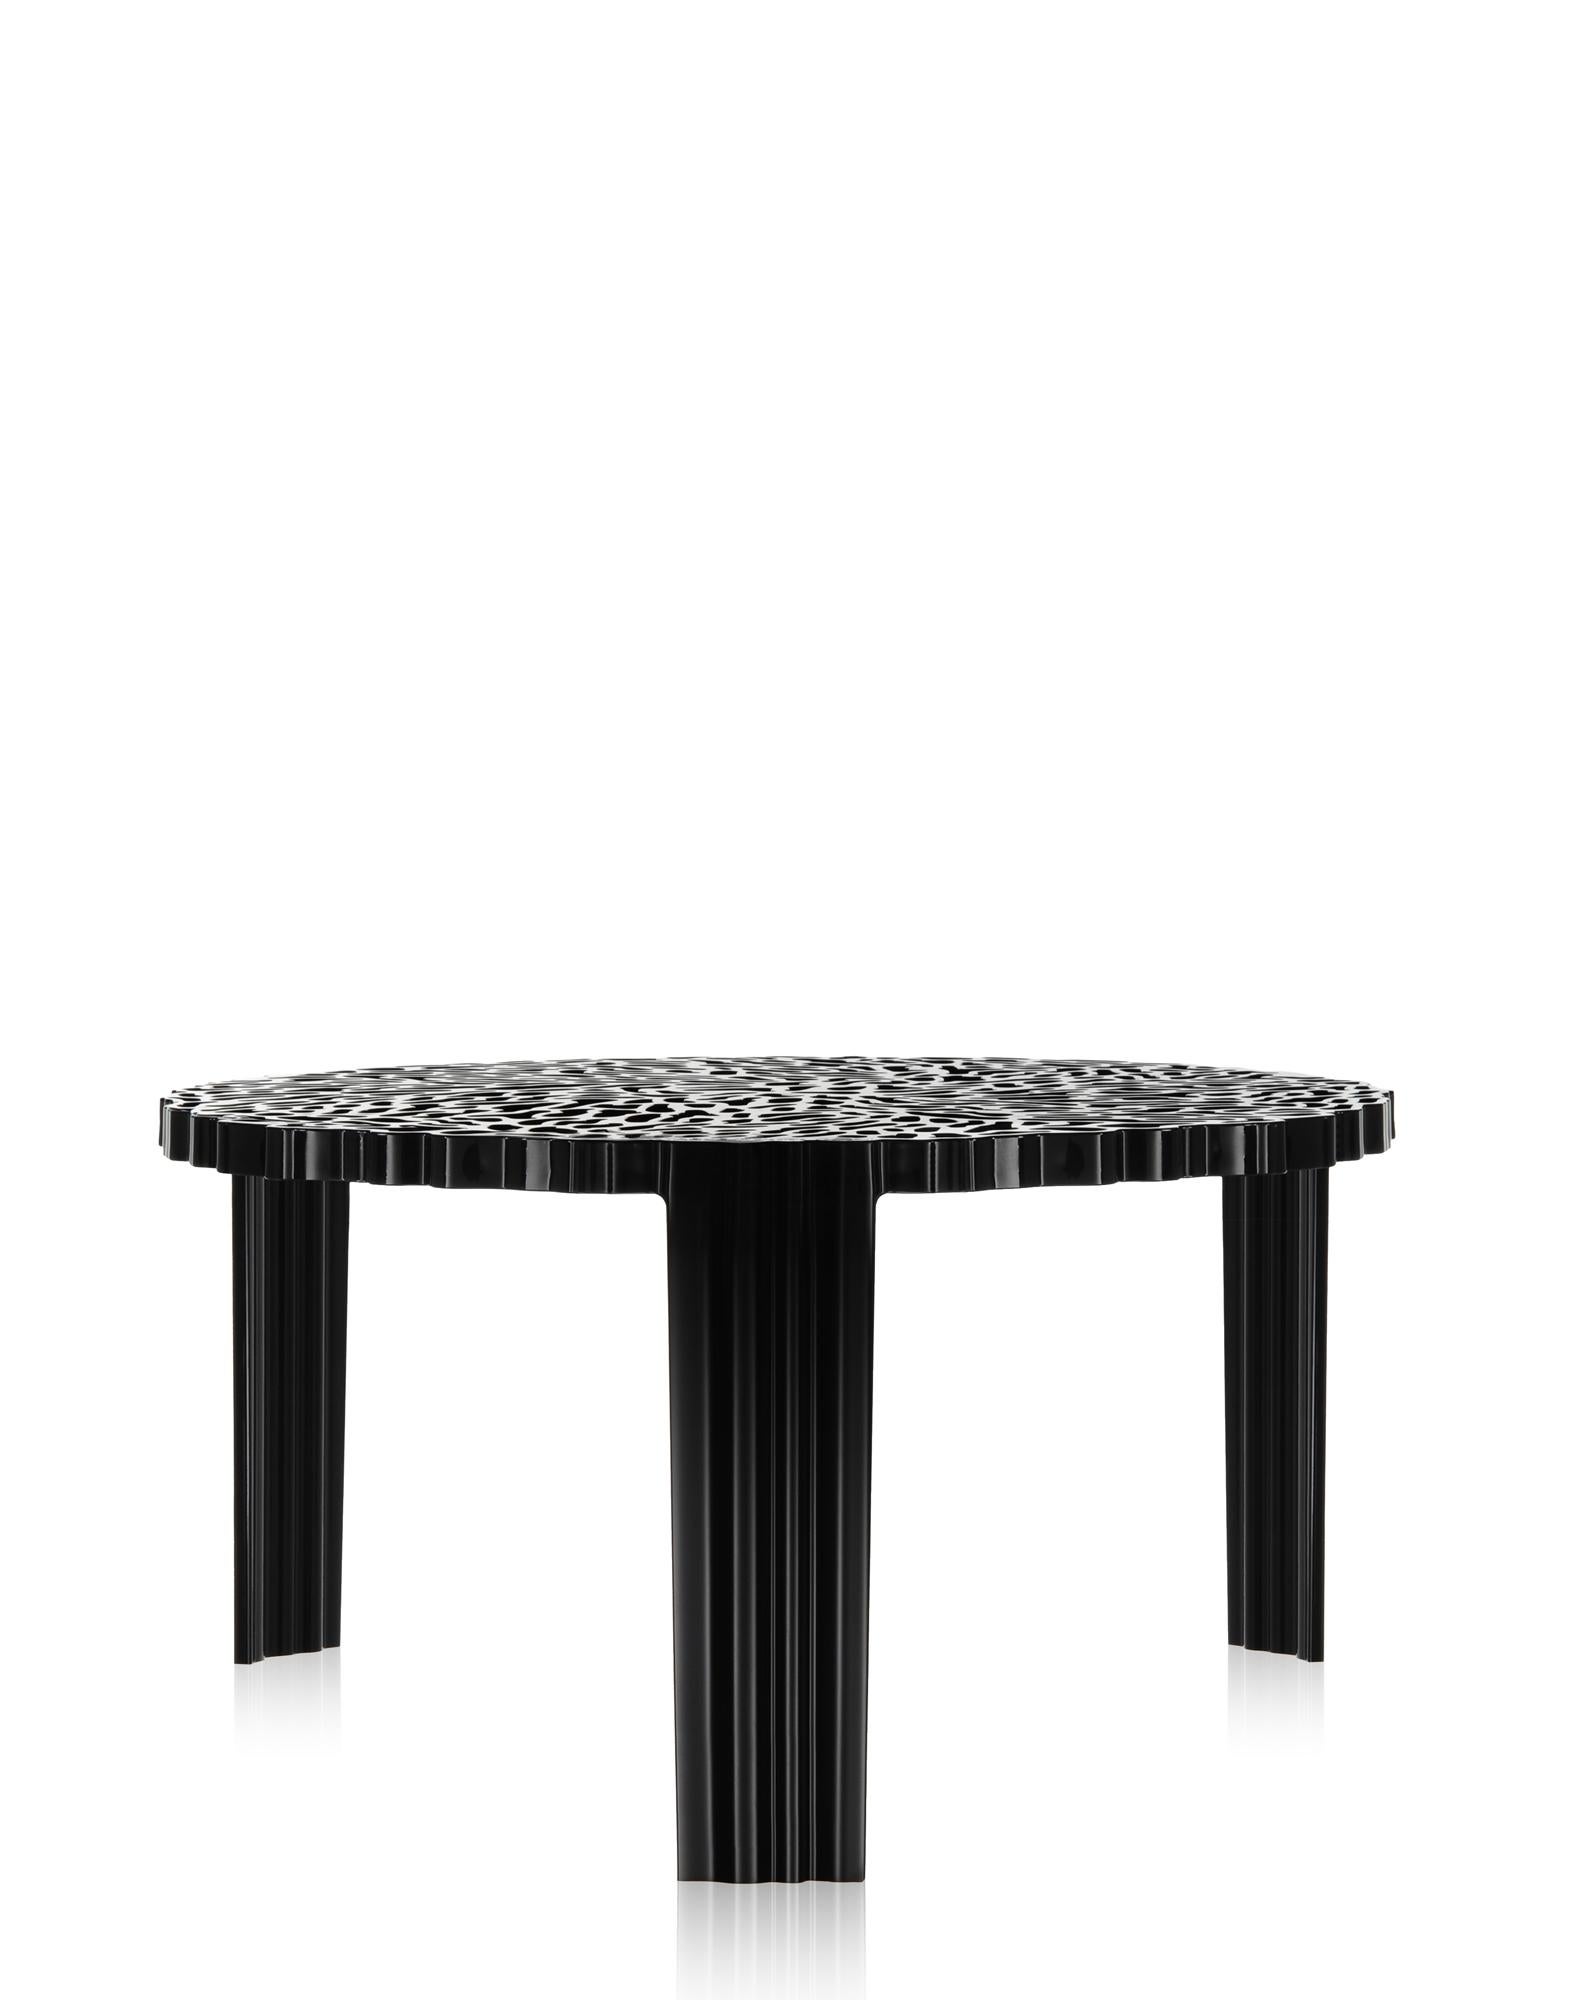 Une gamme de tables en trois hauteurs. La surface du plateau de la table T alterne le plein et l'espace pour créer un effet élégant et précieux qui rappelle la broderie.

Il existe en 3 hauteurs différentes.